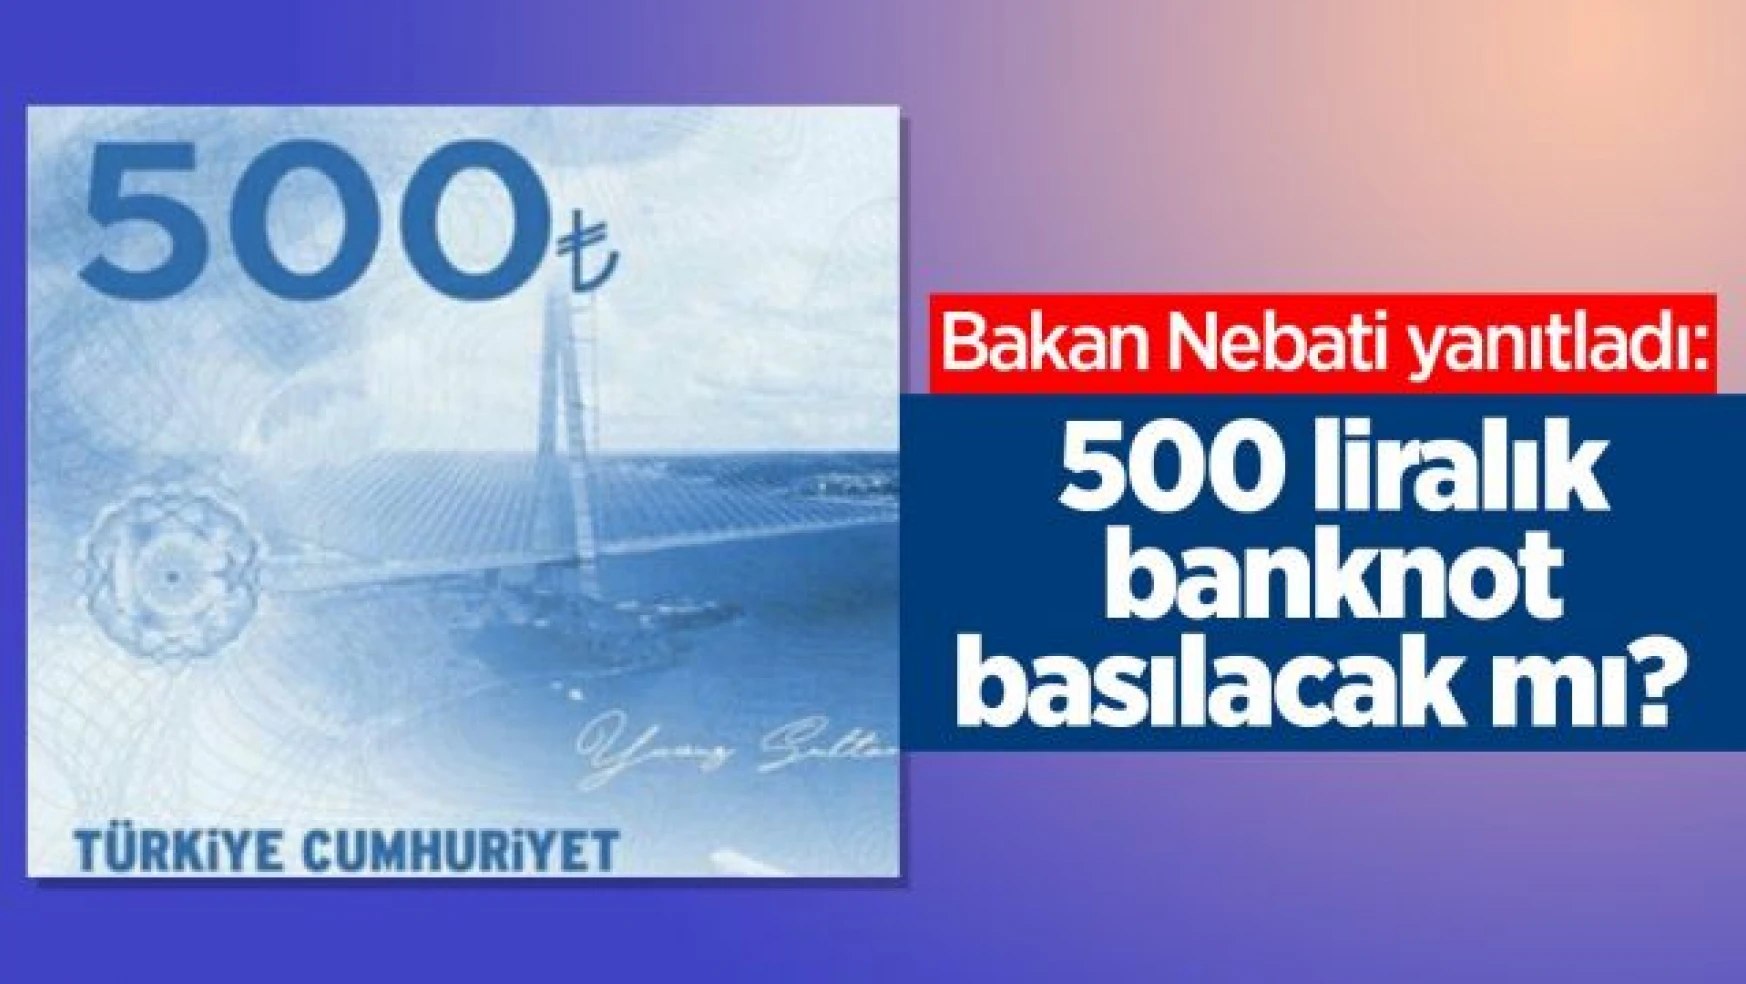 Bakan Nebati yanıtladı: 500 liralık banknot basılacak mı?